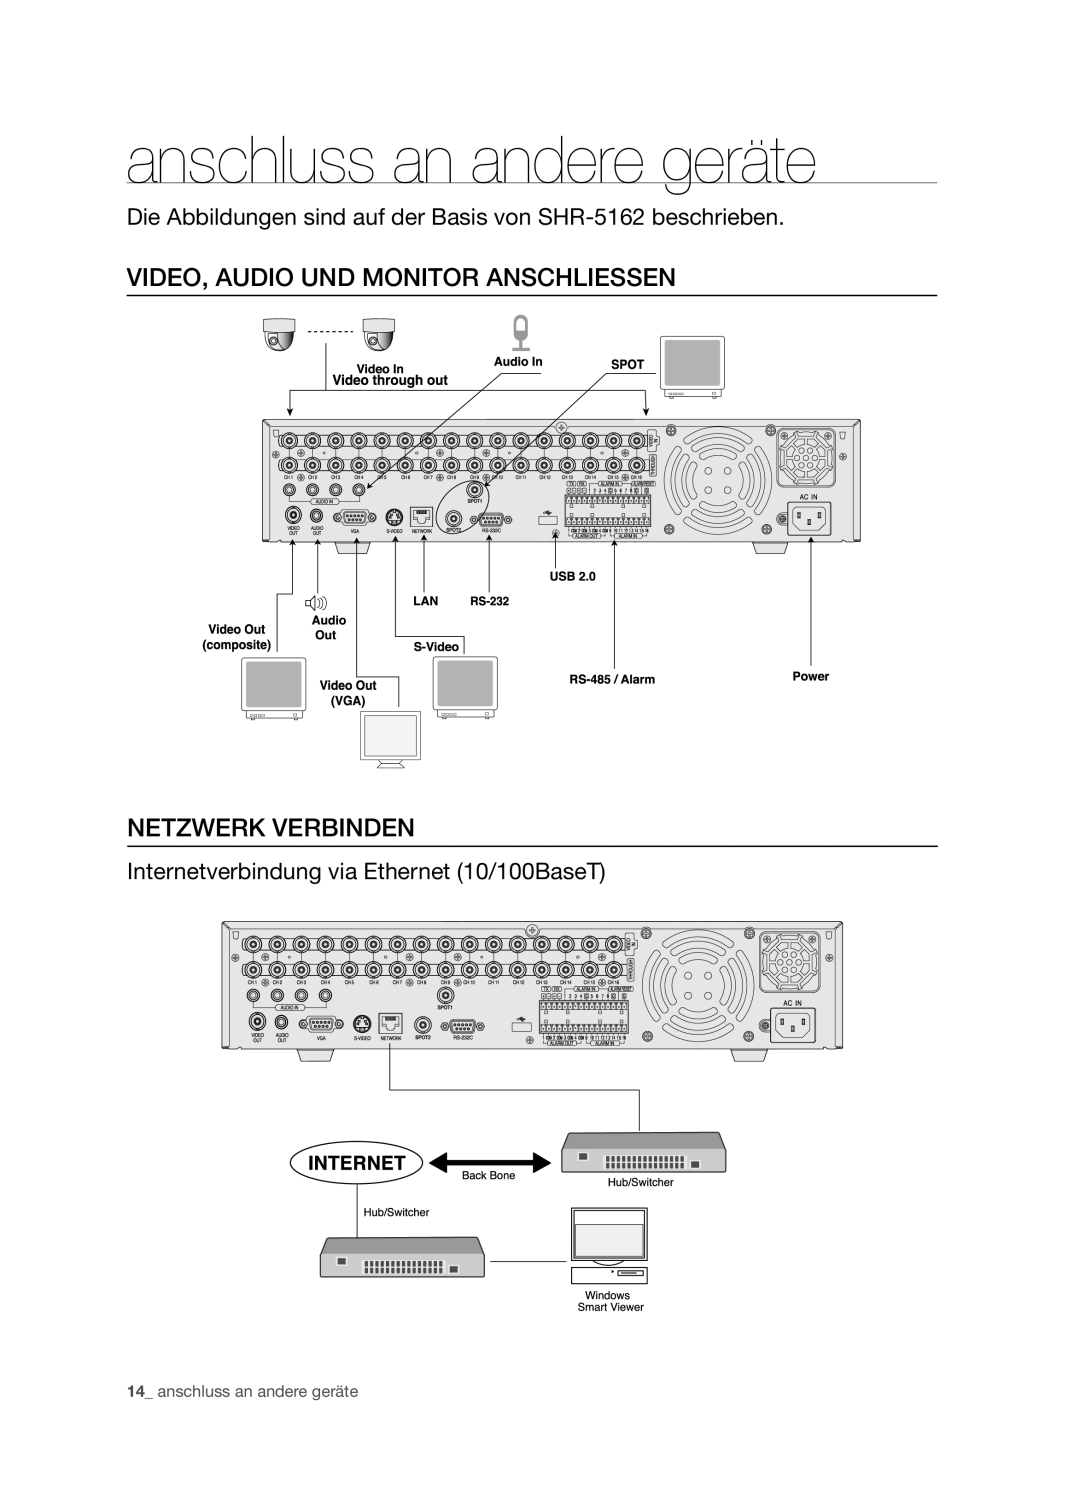 Samsung SHR-5082P/XEG, SHR-5160P manual anschluss an andere geräte, Video, Audio Und Monitor Anschliessen Netzwerk Verbinden 